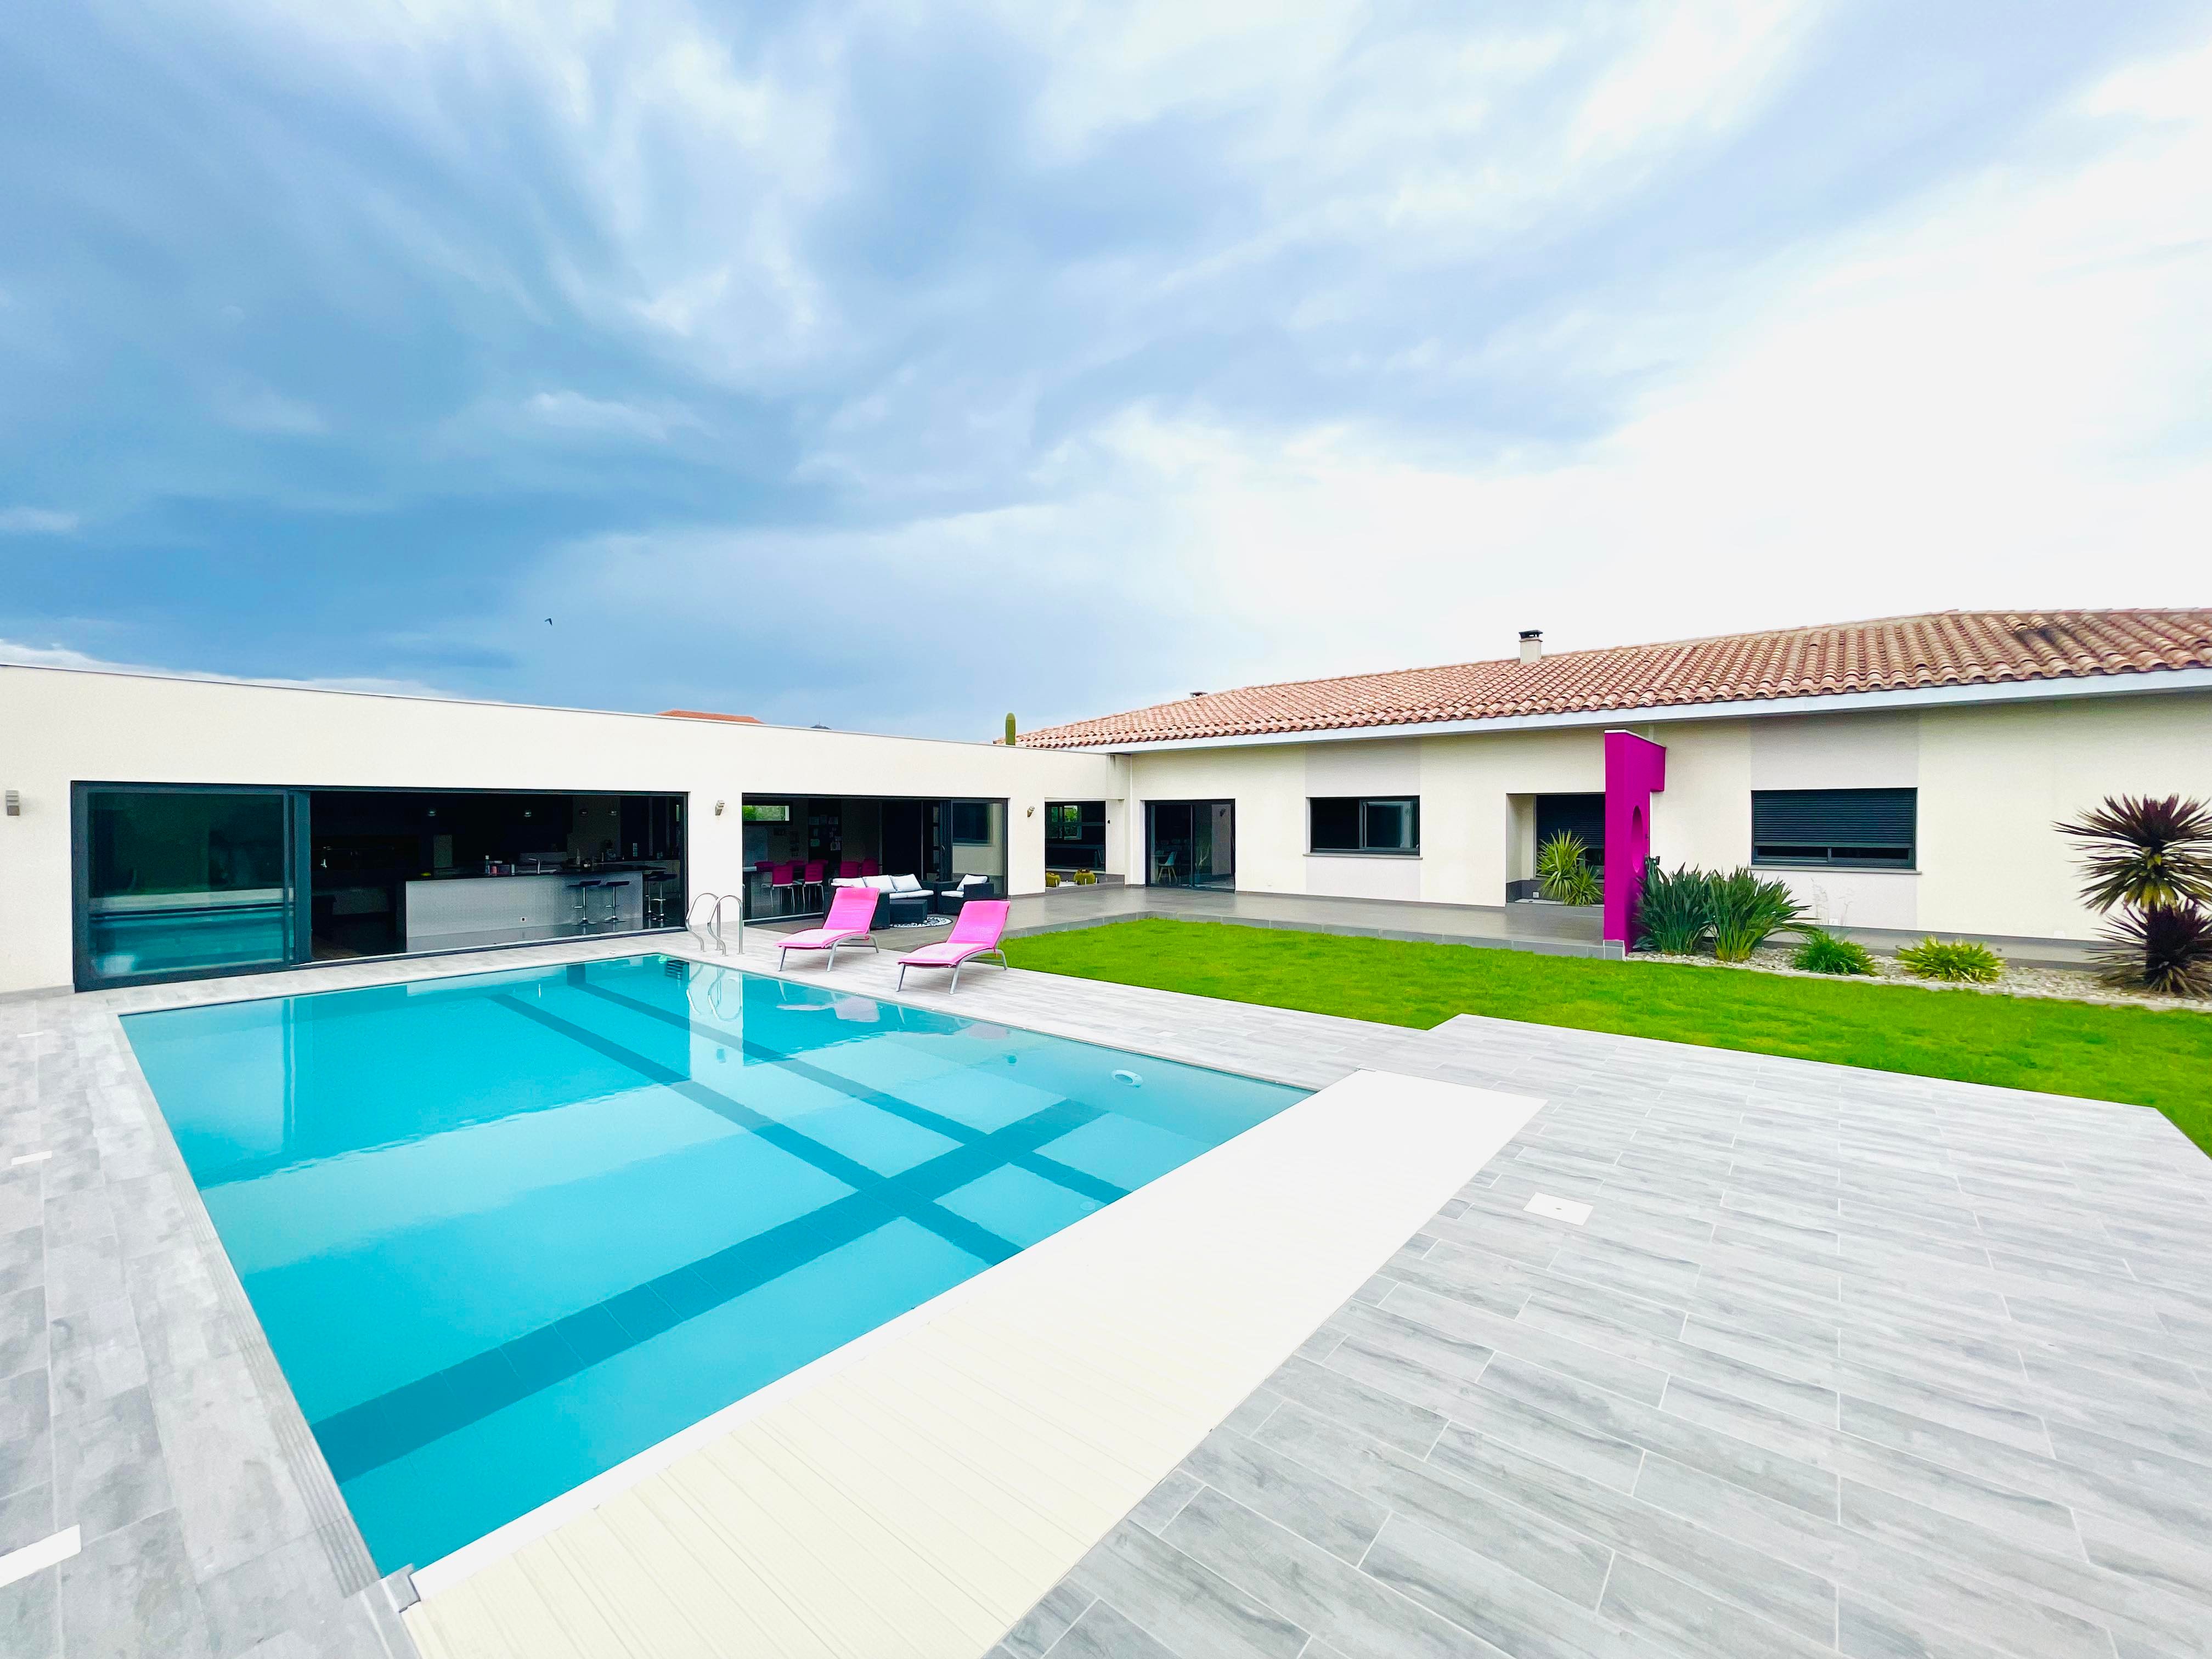 Superbe villa d'architecte plain pied de 220m2 habitables et 100m2 de cuisine d'été, 50m2 de garage, piscine 10x5, terrain de pétanque, SPA. Parcelle 1744m²